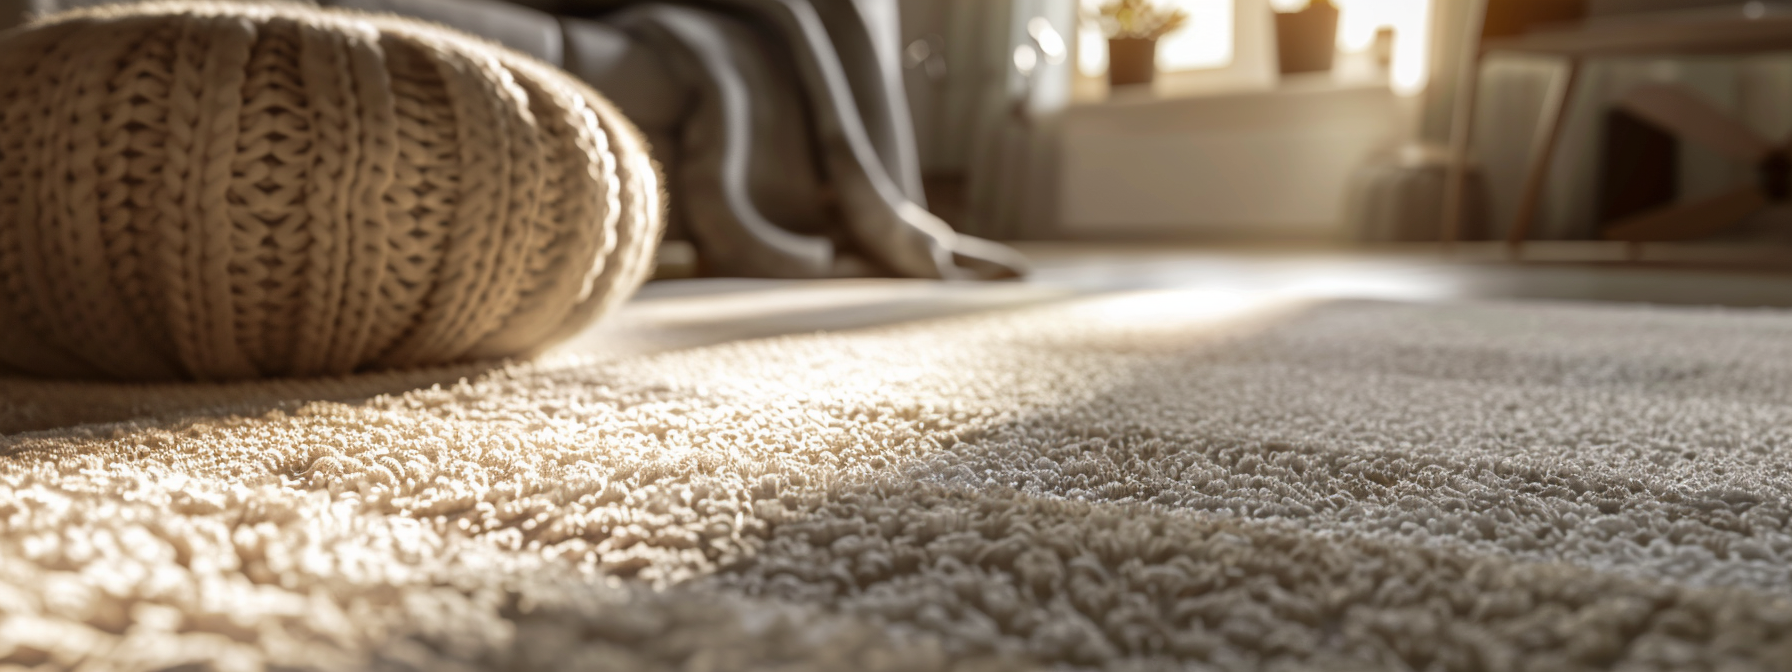 Long-Term Repair Solutions for Carpet Burns